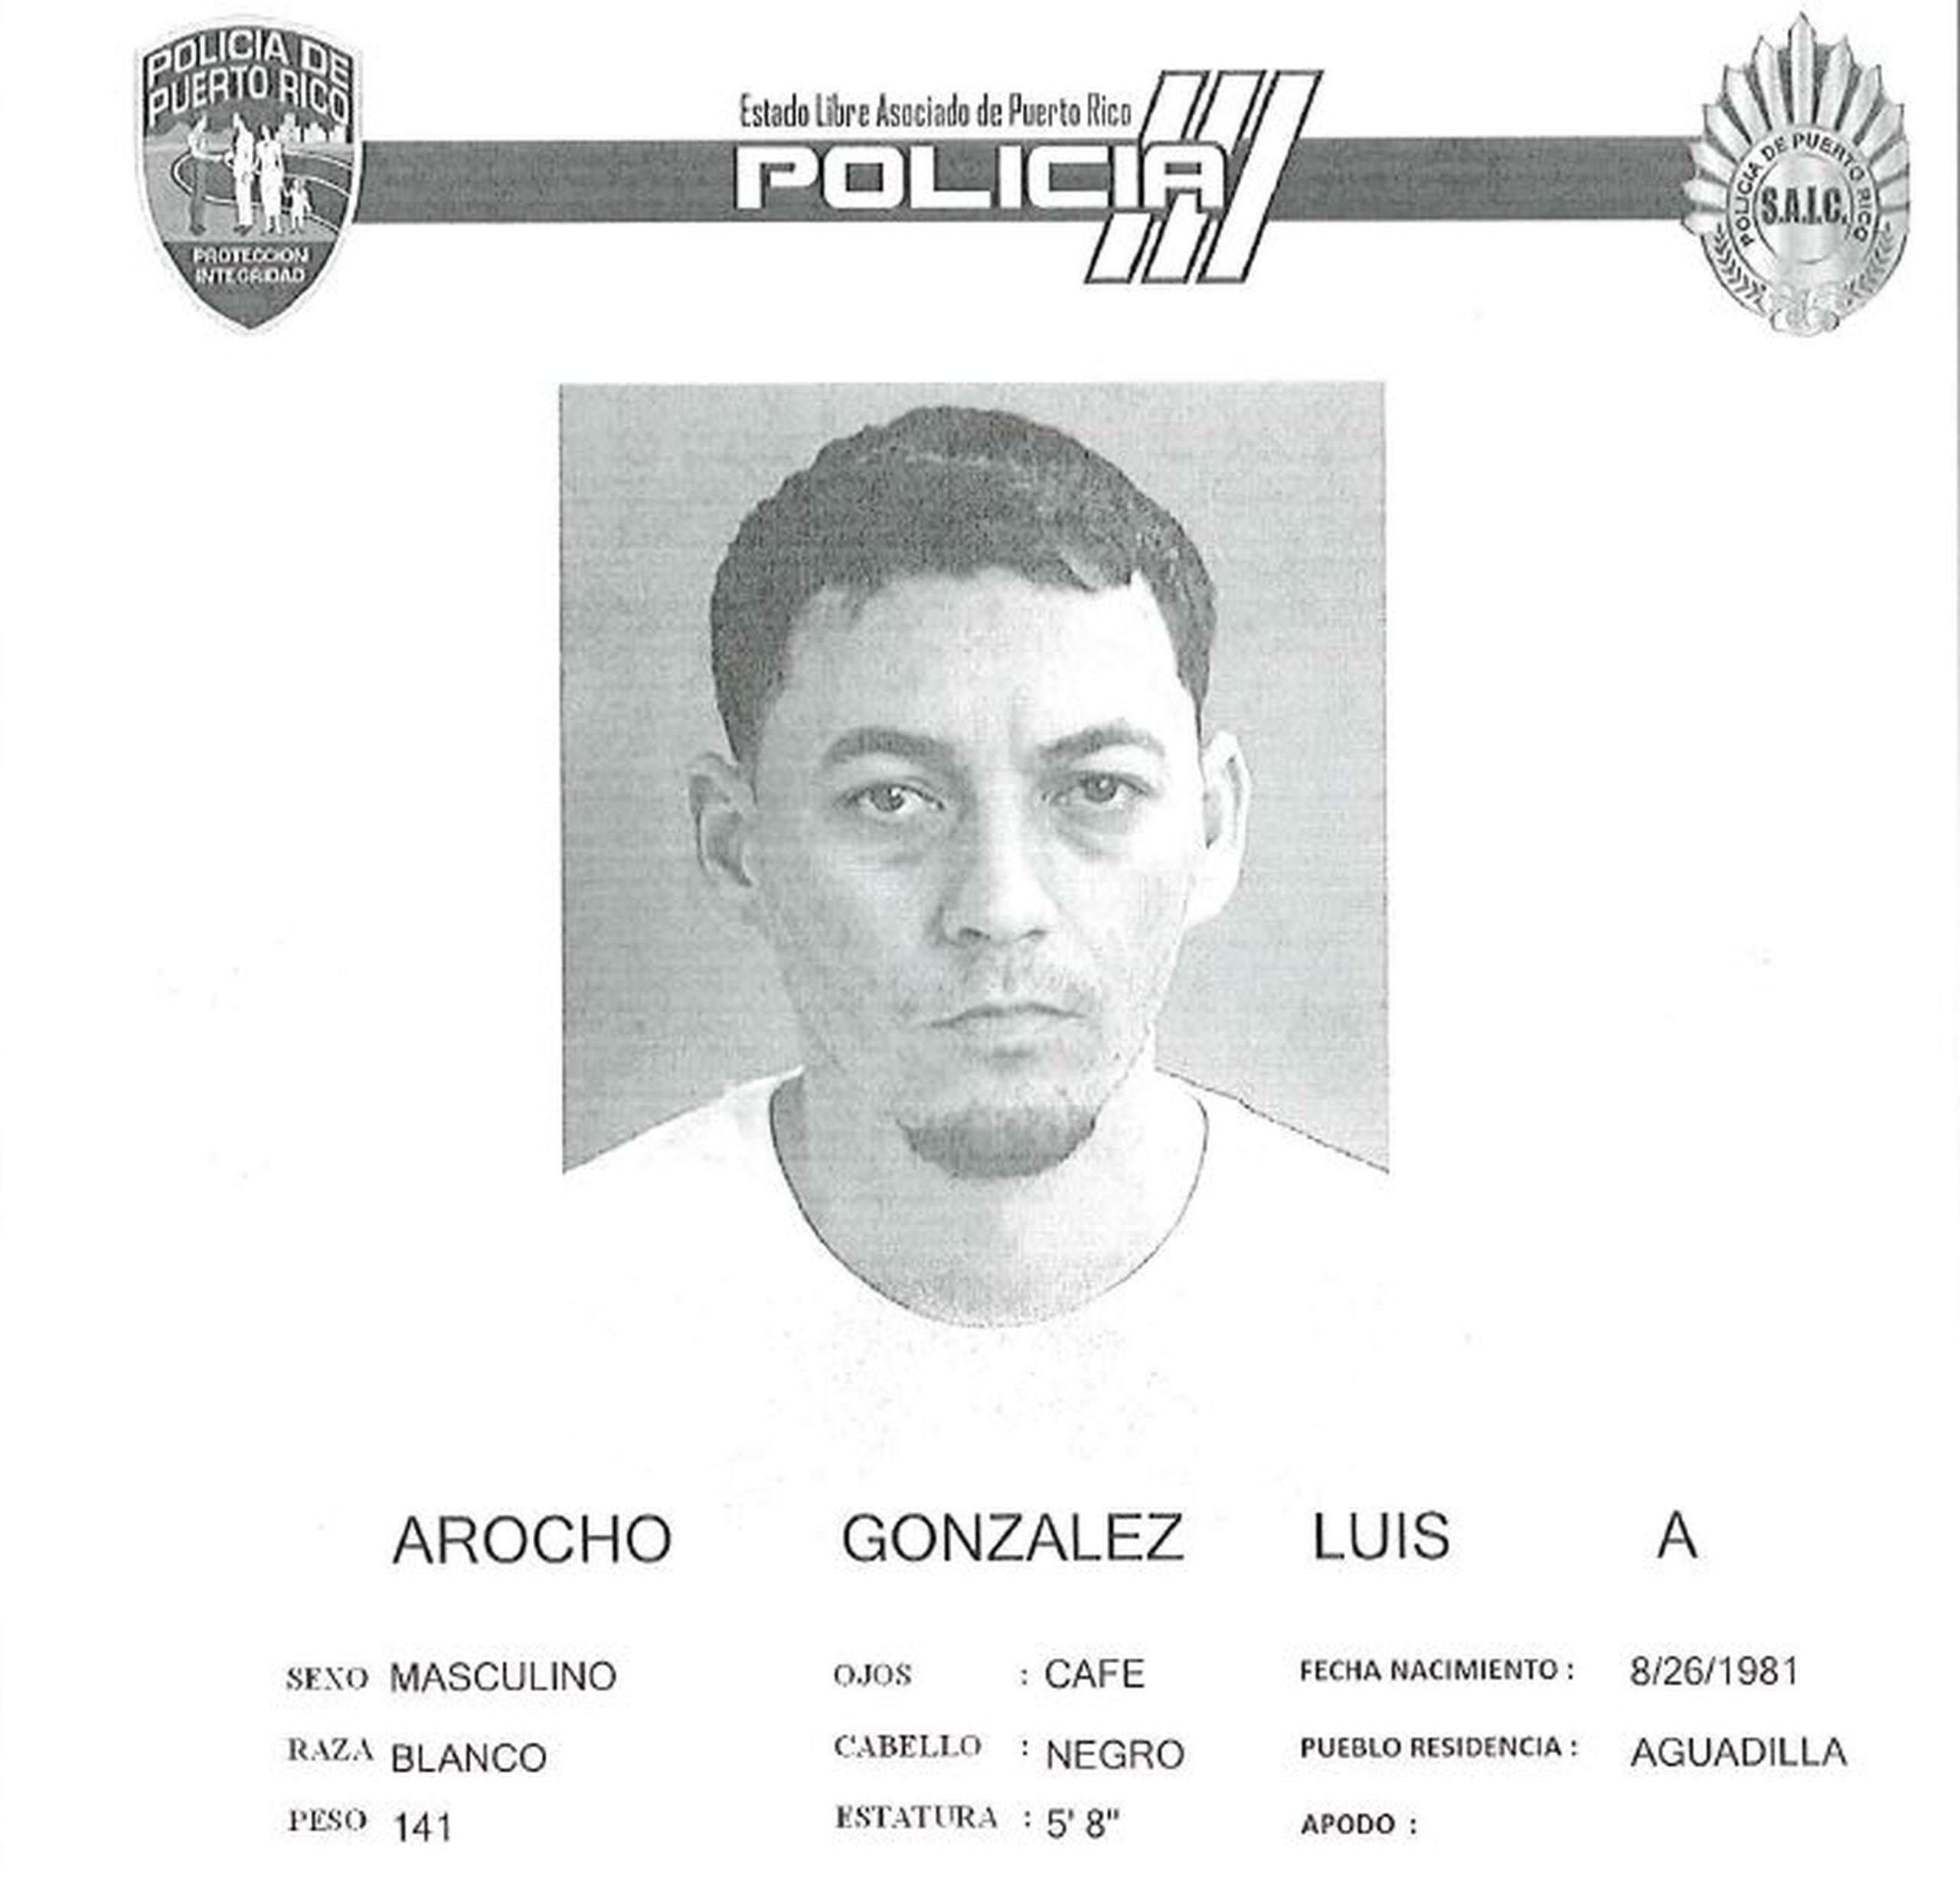 La Policía suministró la ficha de la persona con el nombre similar al del funcionario adscrito a La Fortaleza.   